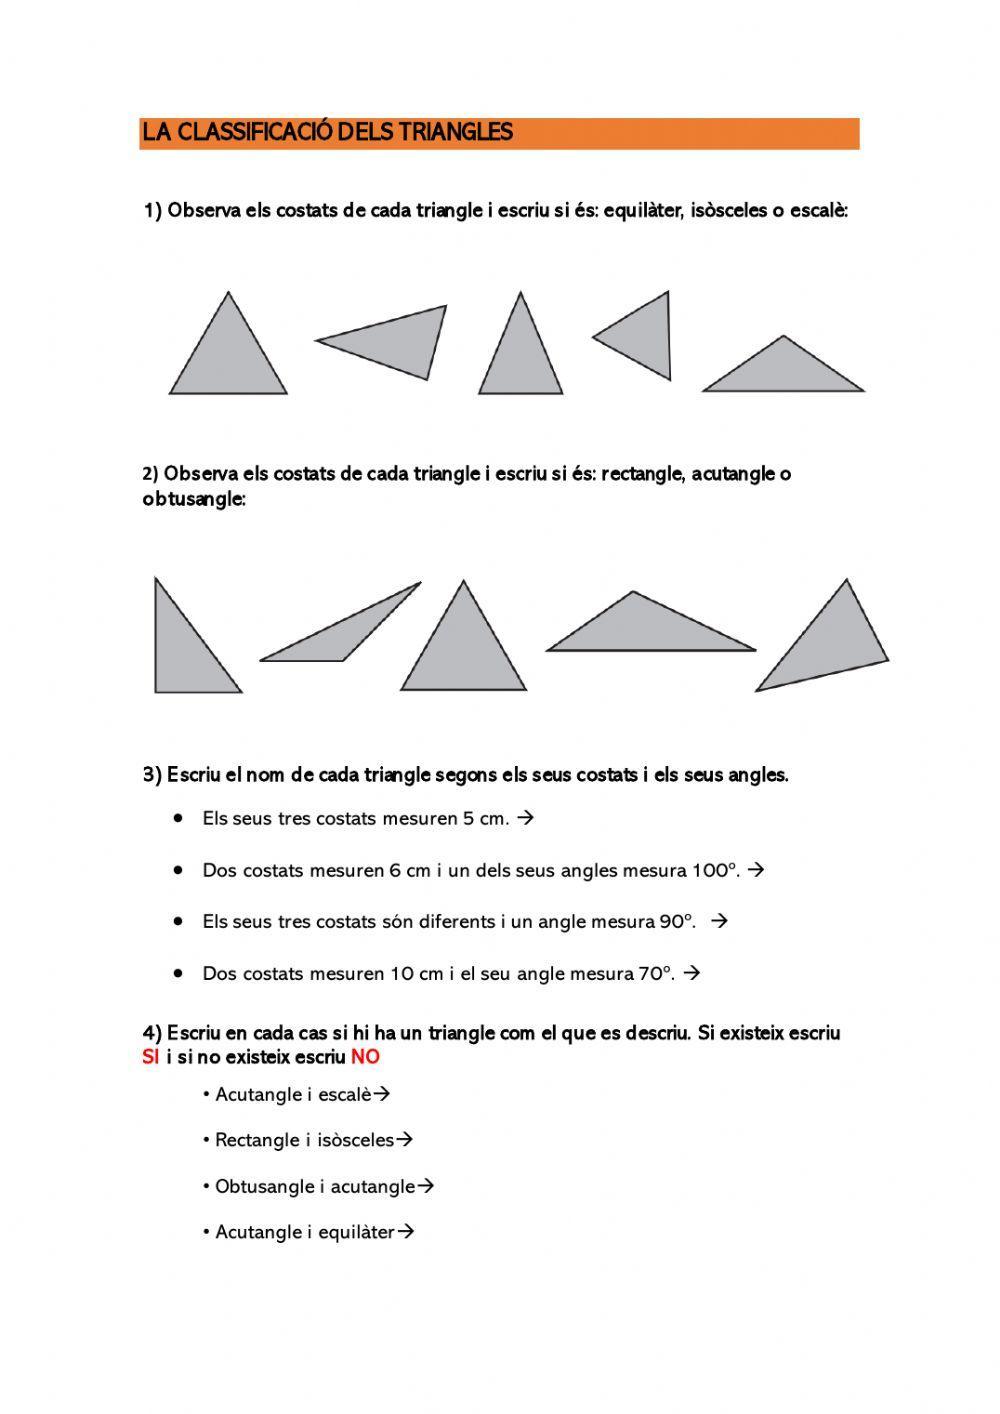 Classificació de triangles